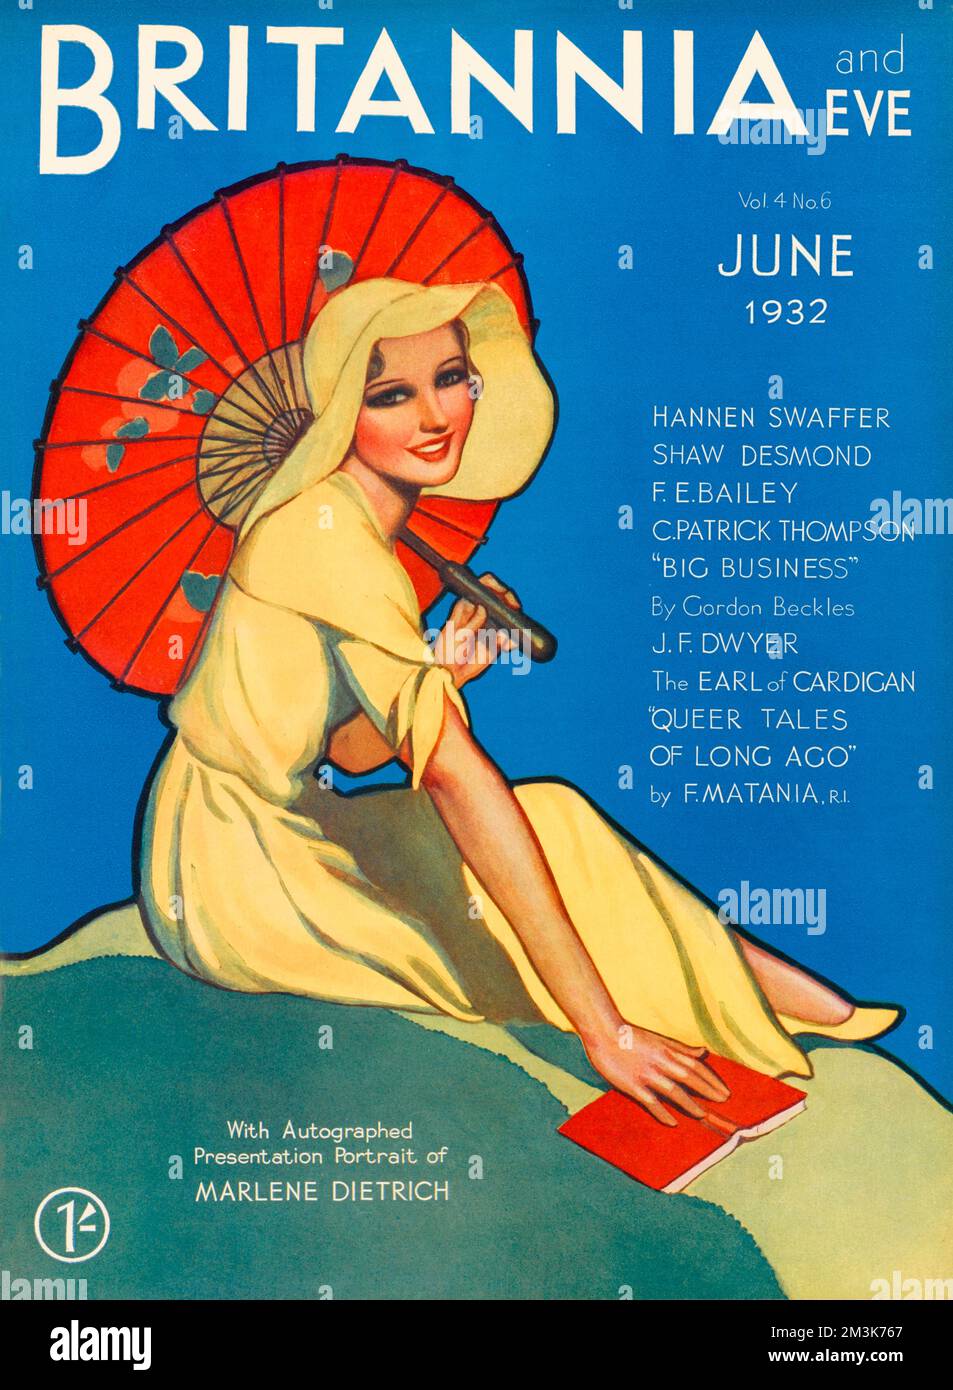 Illustrazione di copertina per la rivista Britannia ed Eve che mostra una donna del 1930s in un abito estivo alla moda e un cappello a forma di floppy, con un ombrellone cinese. Data: Giugno 1932 Foto Stock